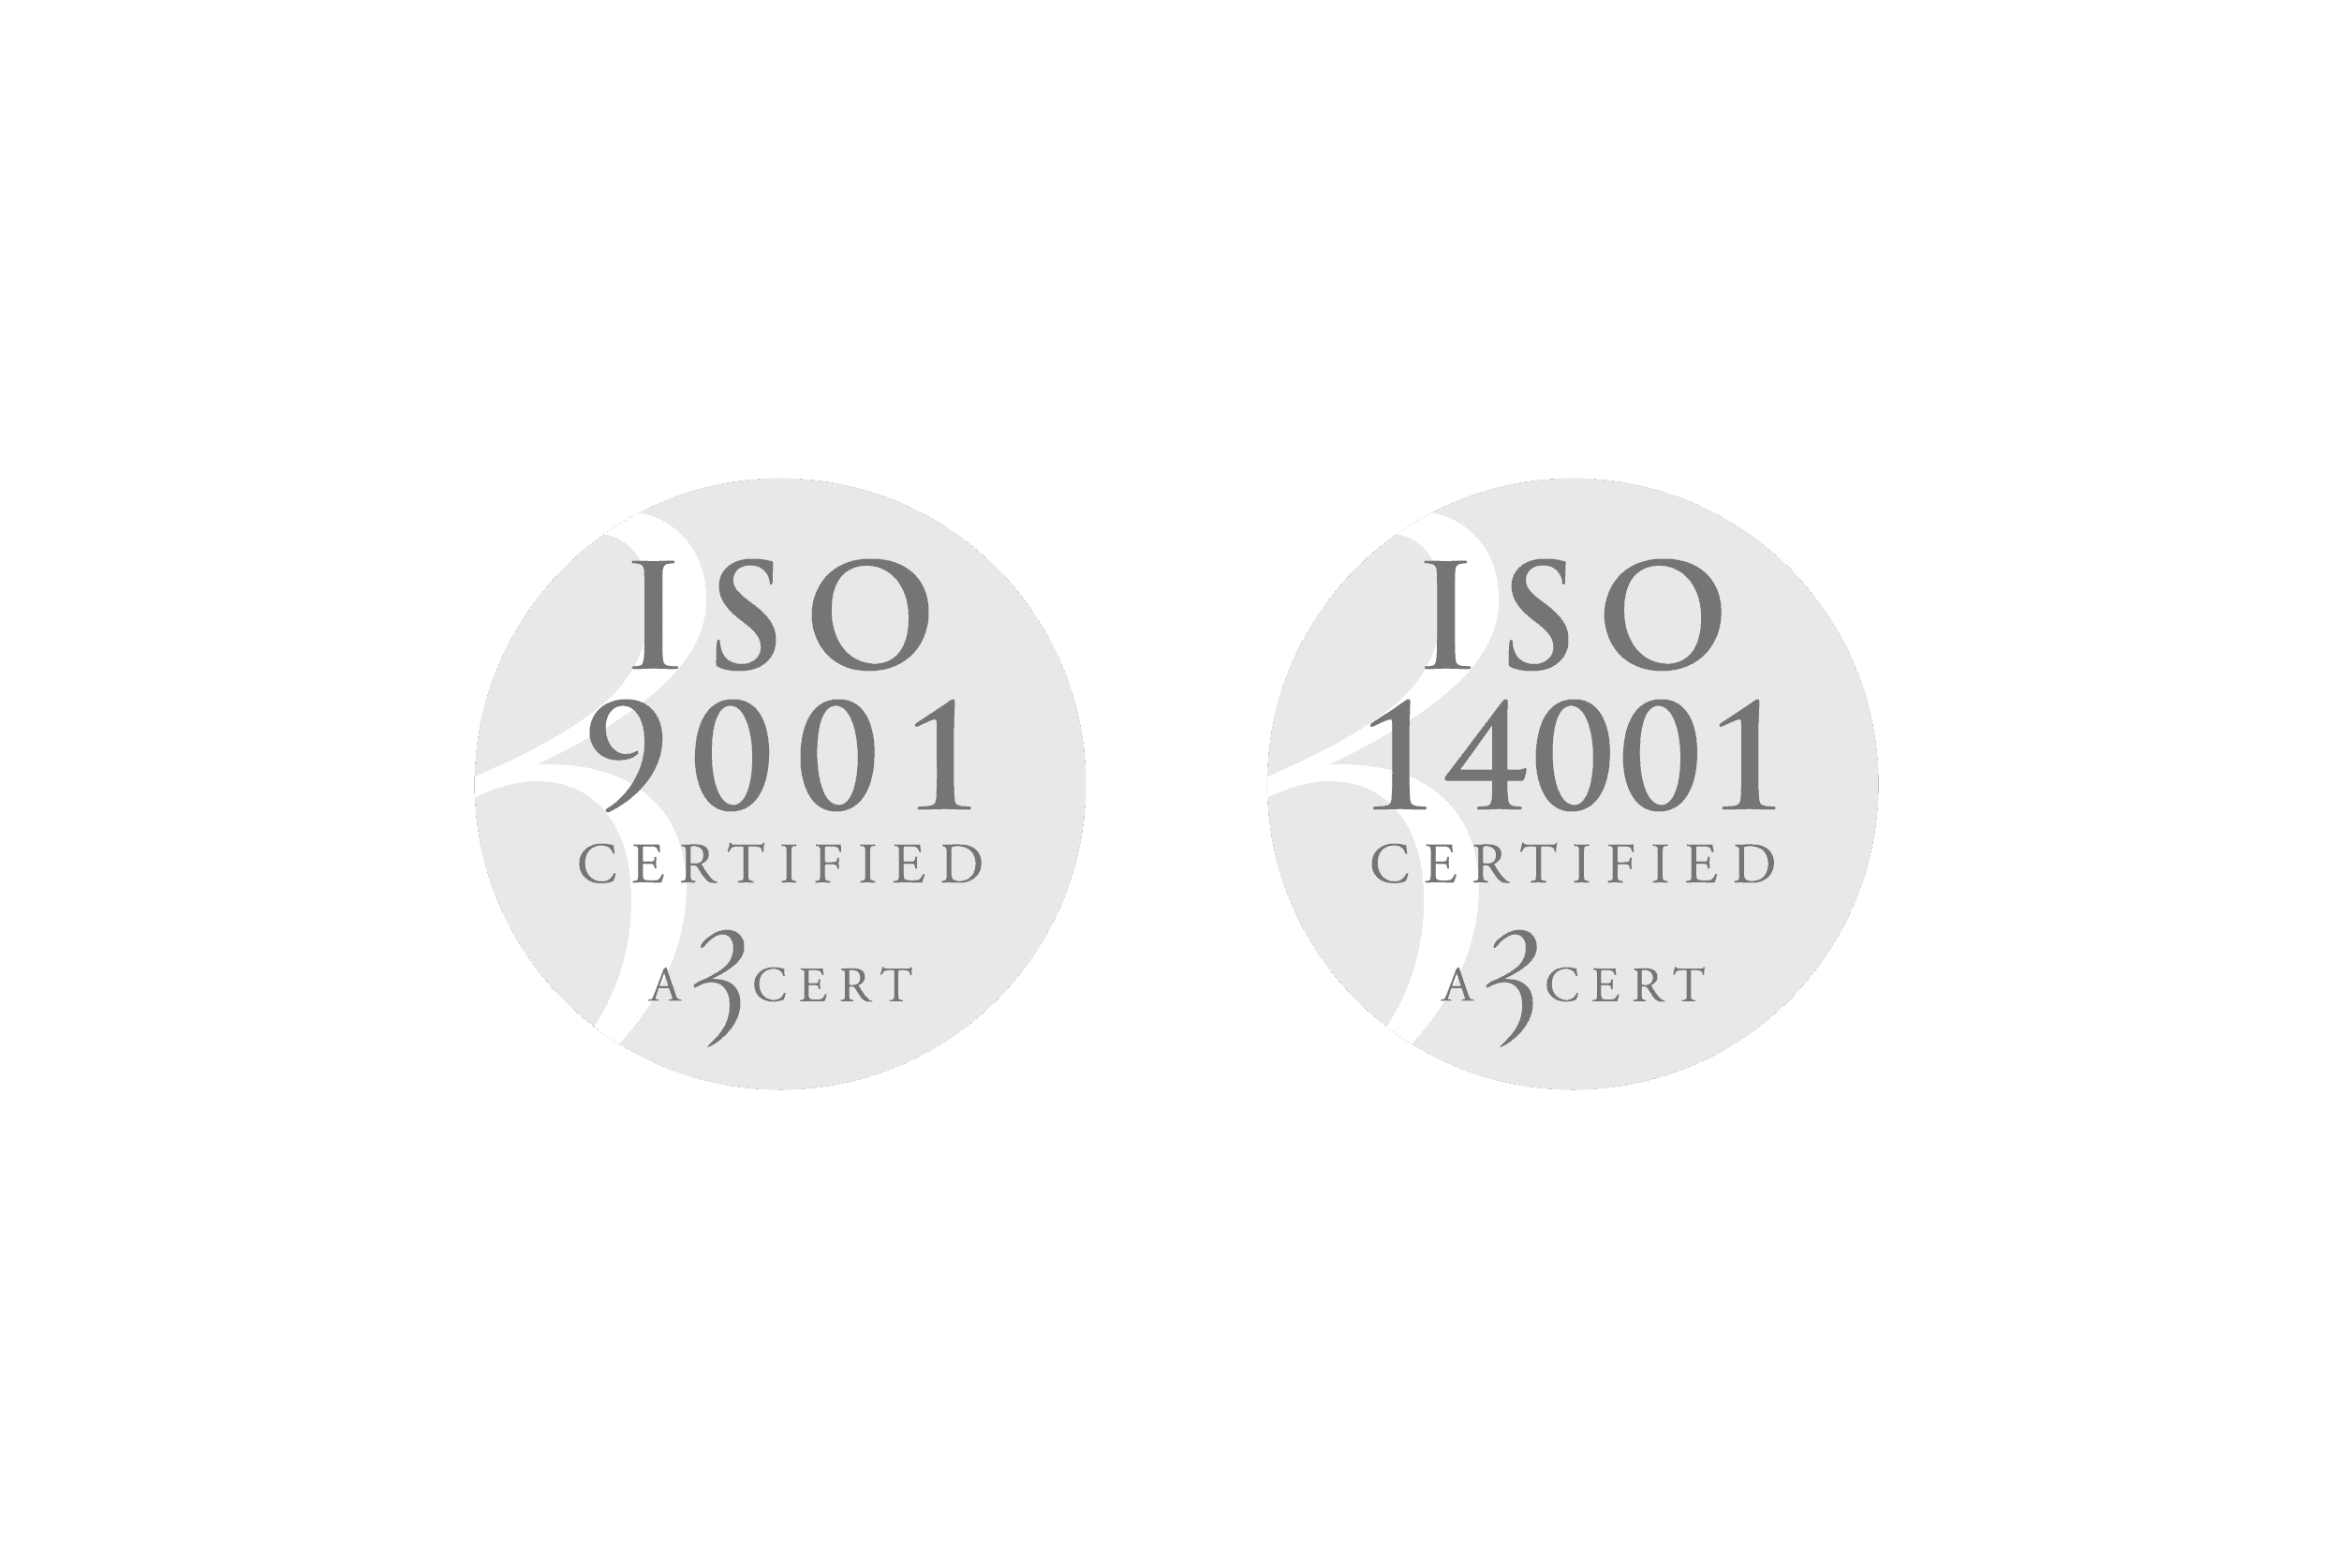 Hemsida, Certifiering, 9001 och 14001, centrerat.png